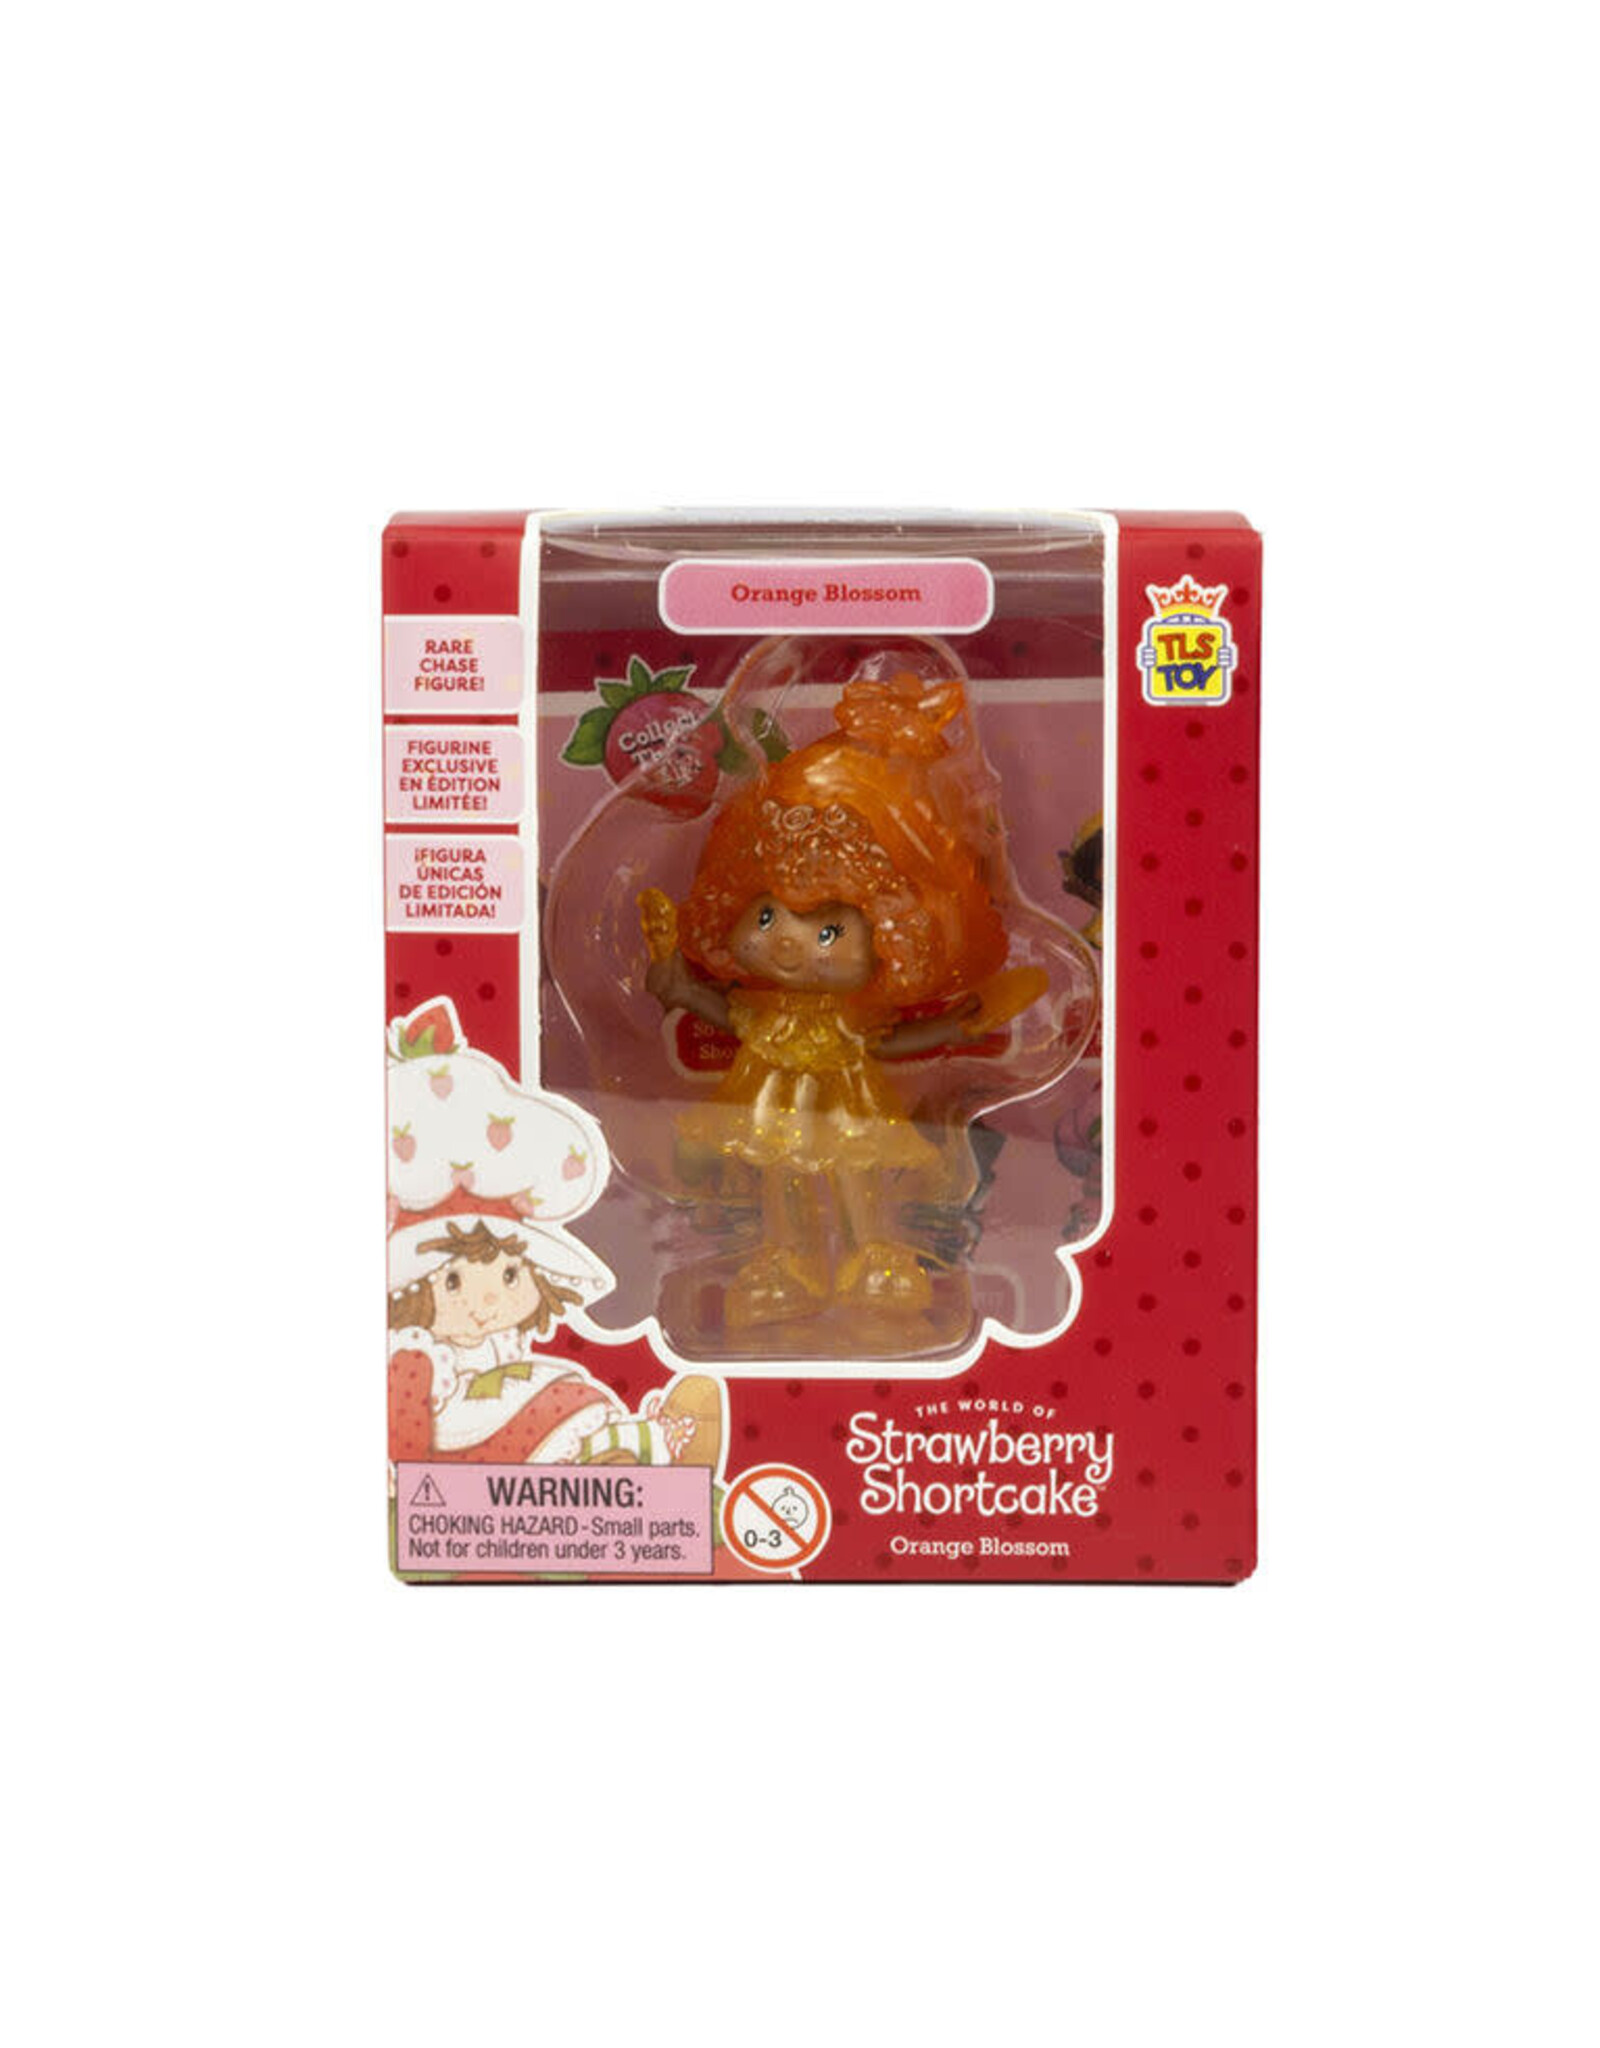 Strawberry Shortcake 2.5" Collectible Figure - Orange Blossom (Rare Chase)